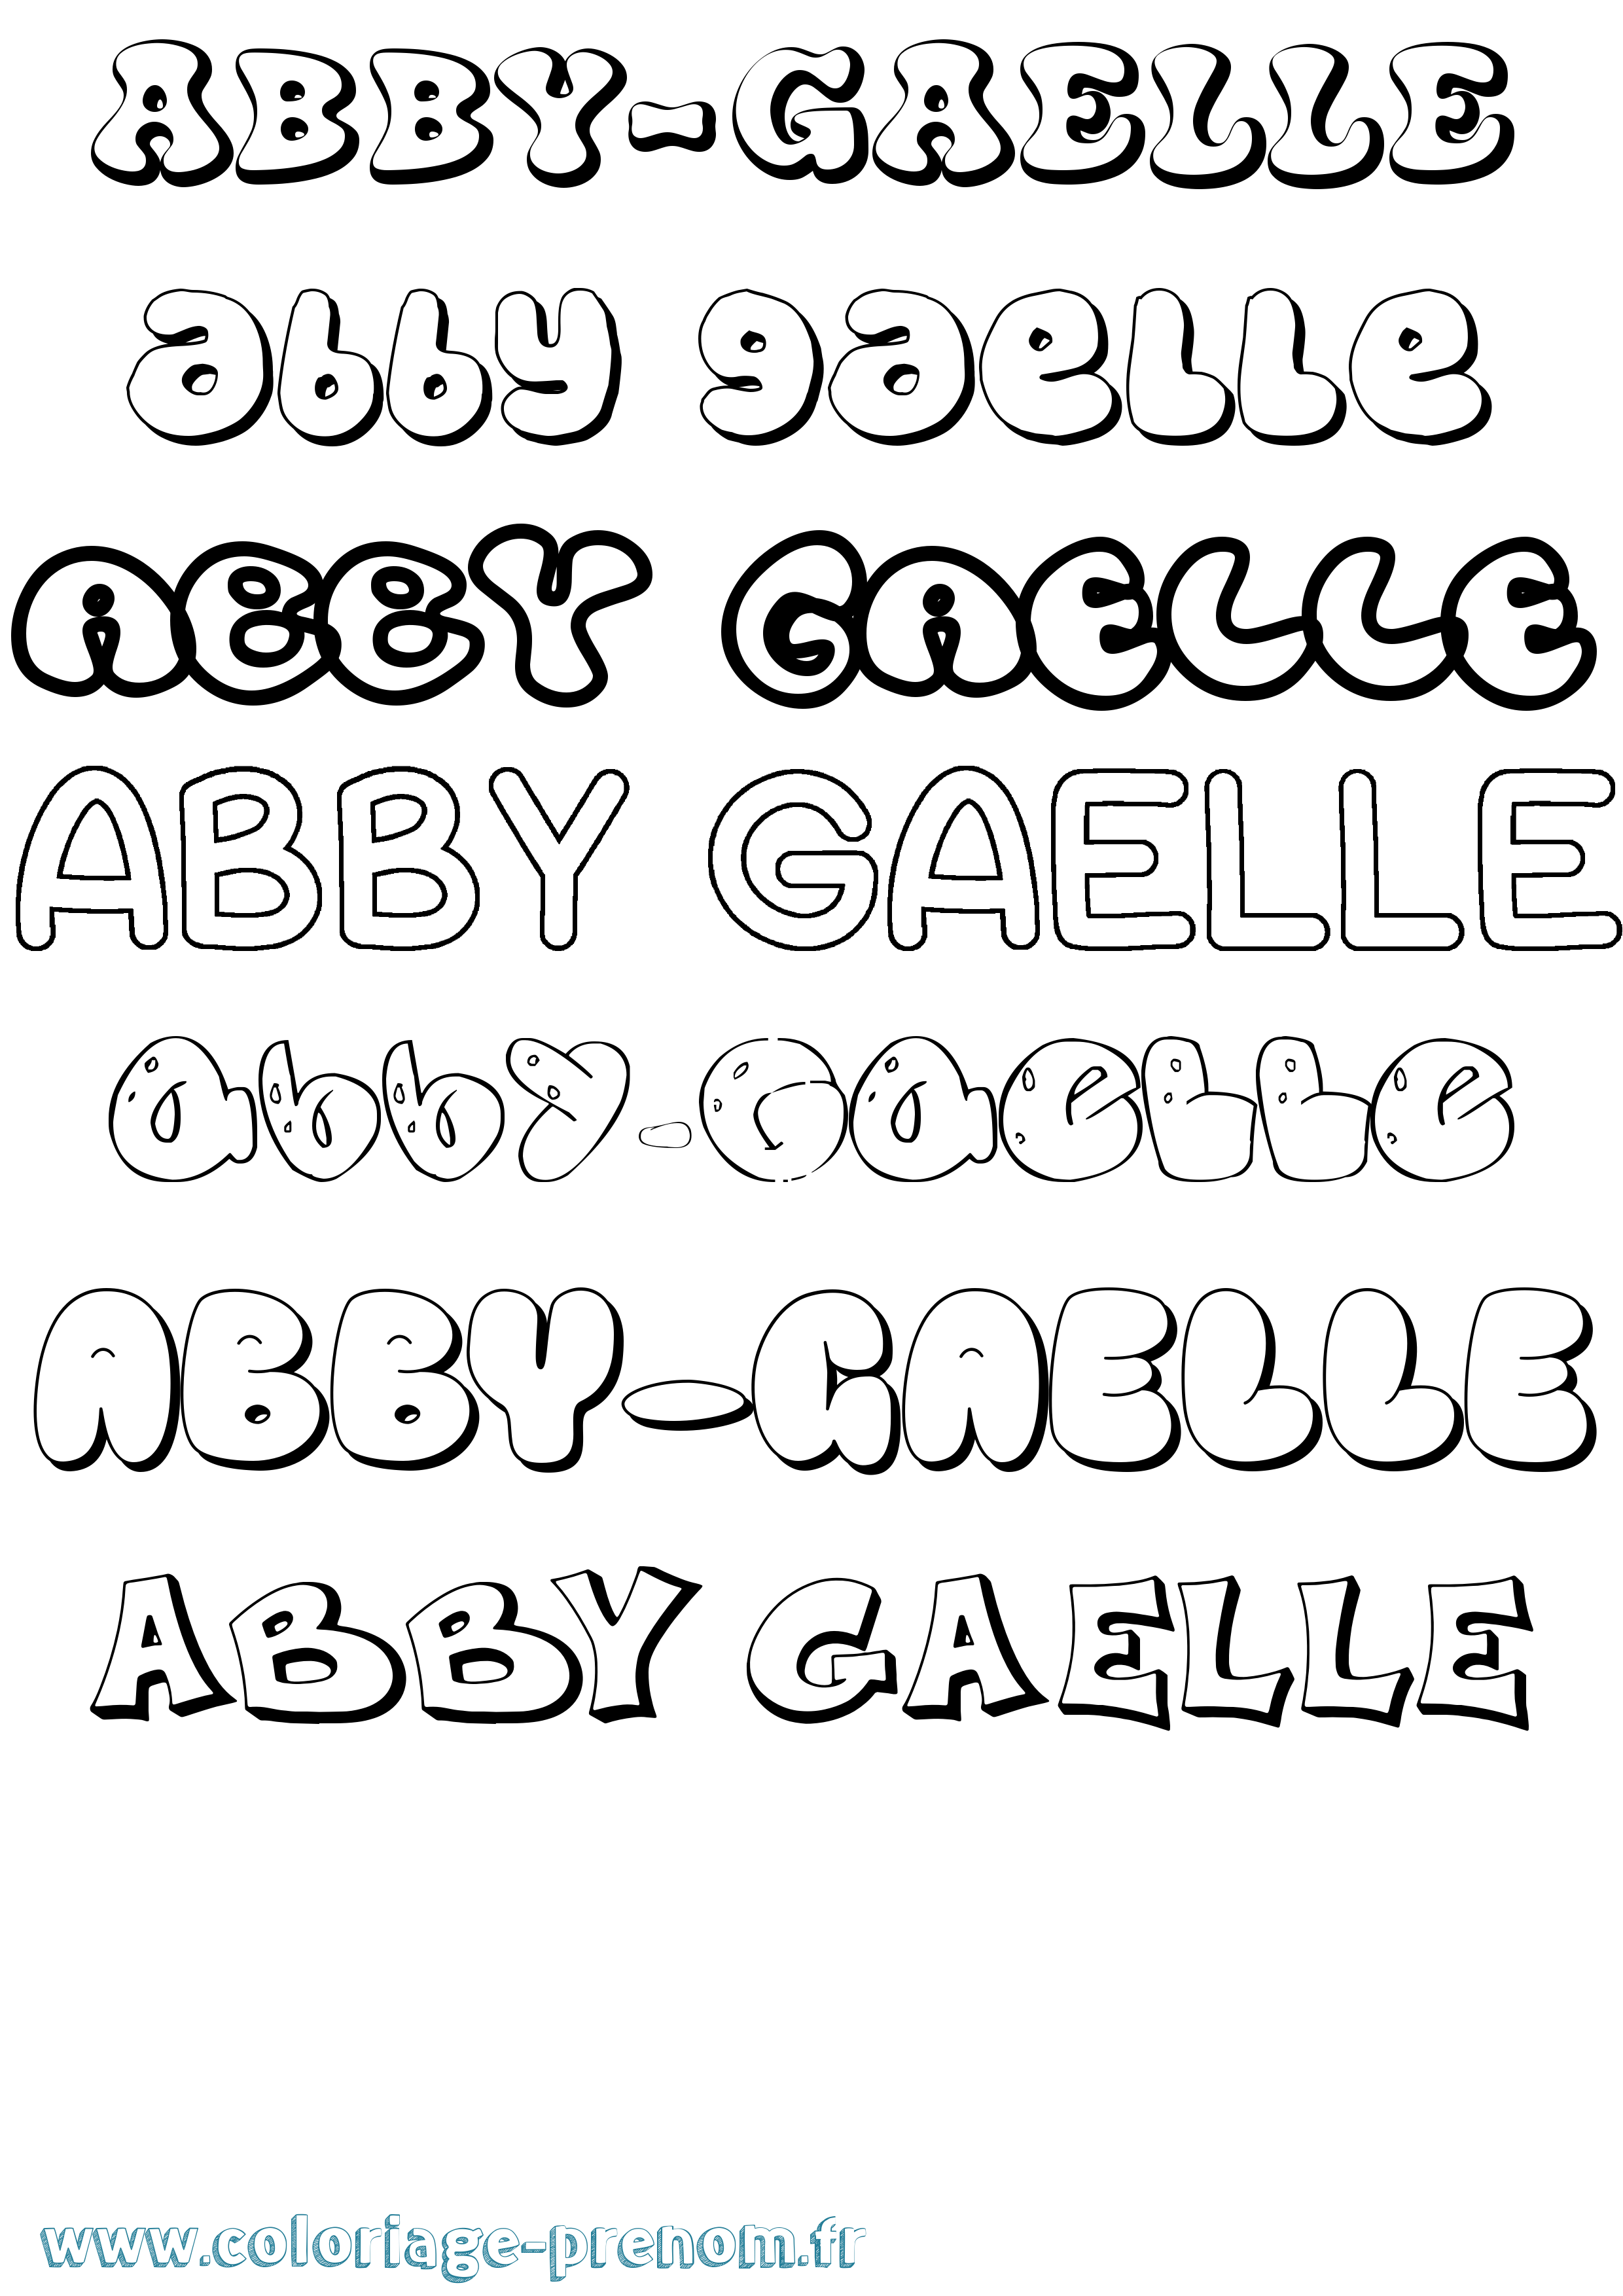 Coloriage prénom Abby-Gaelle Bubble